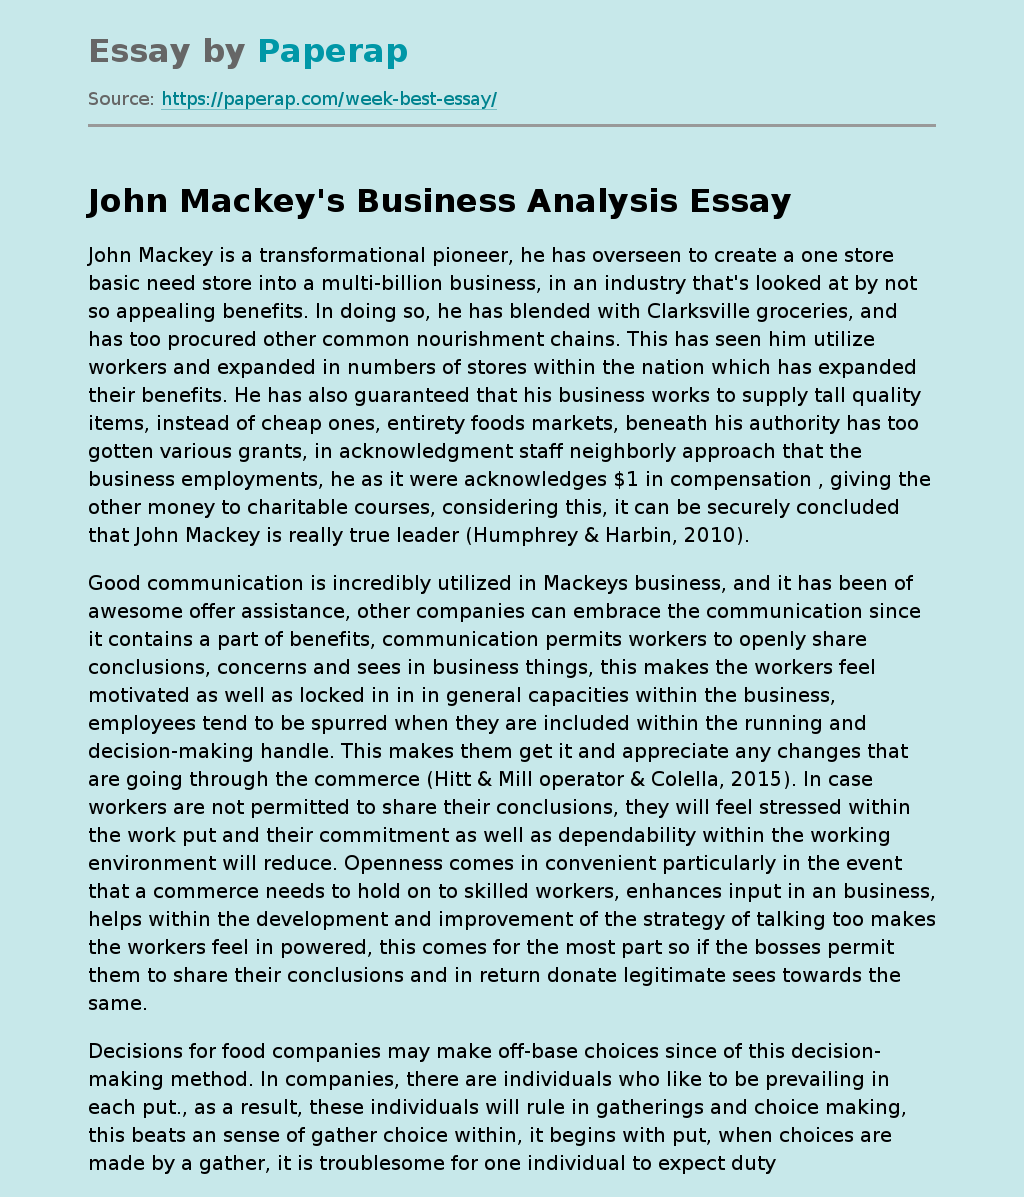 John Mackey's Business Analysis